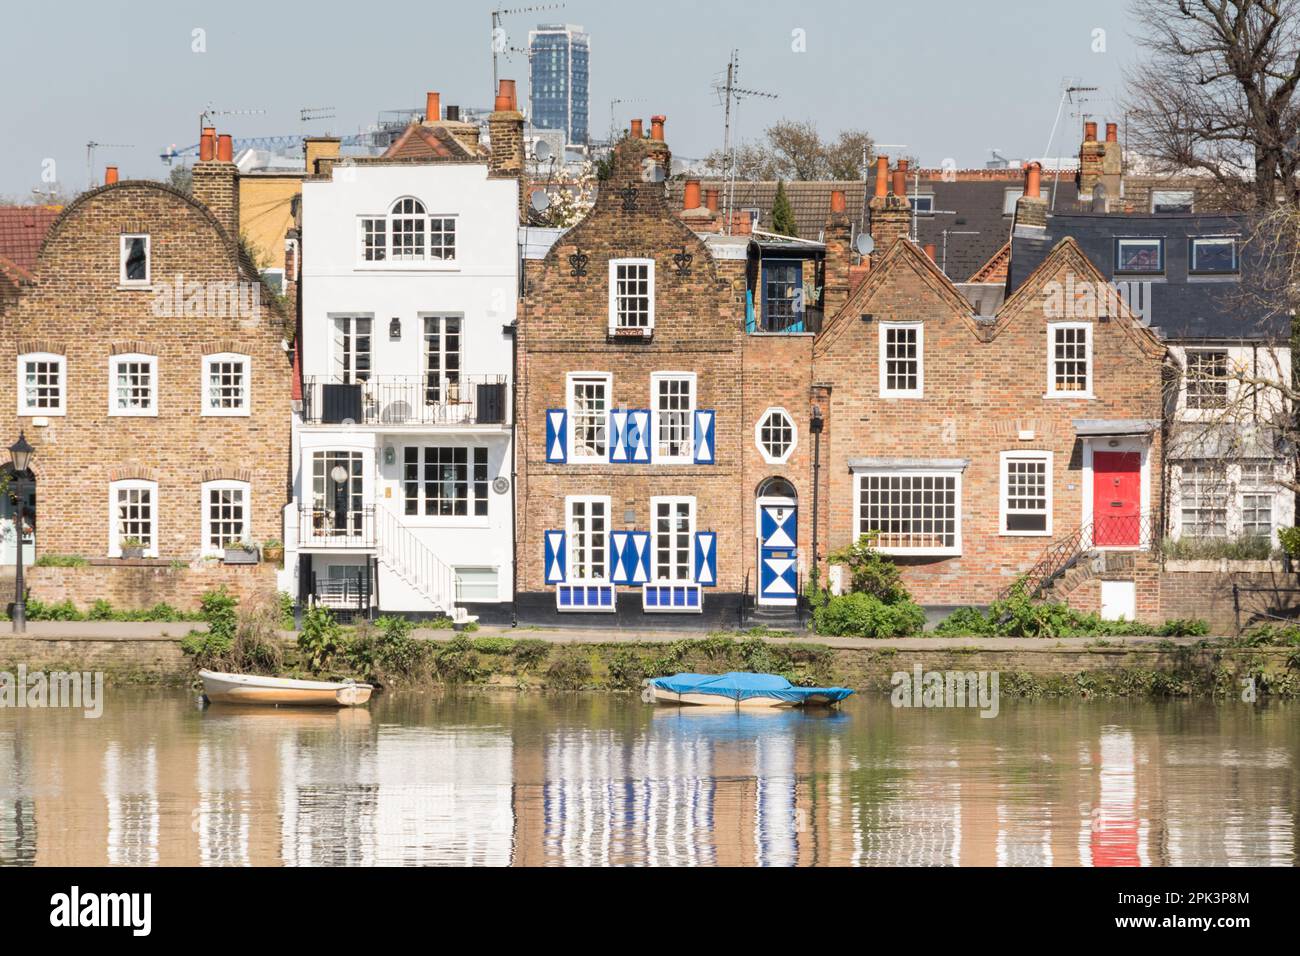 Réflexions sur une Tamise placide et la Maison hollandaise bleue et blanche à Strand-on-the-Green, Chiswick, Londres, Angleterre, Royaume-Uni Banque D'Images